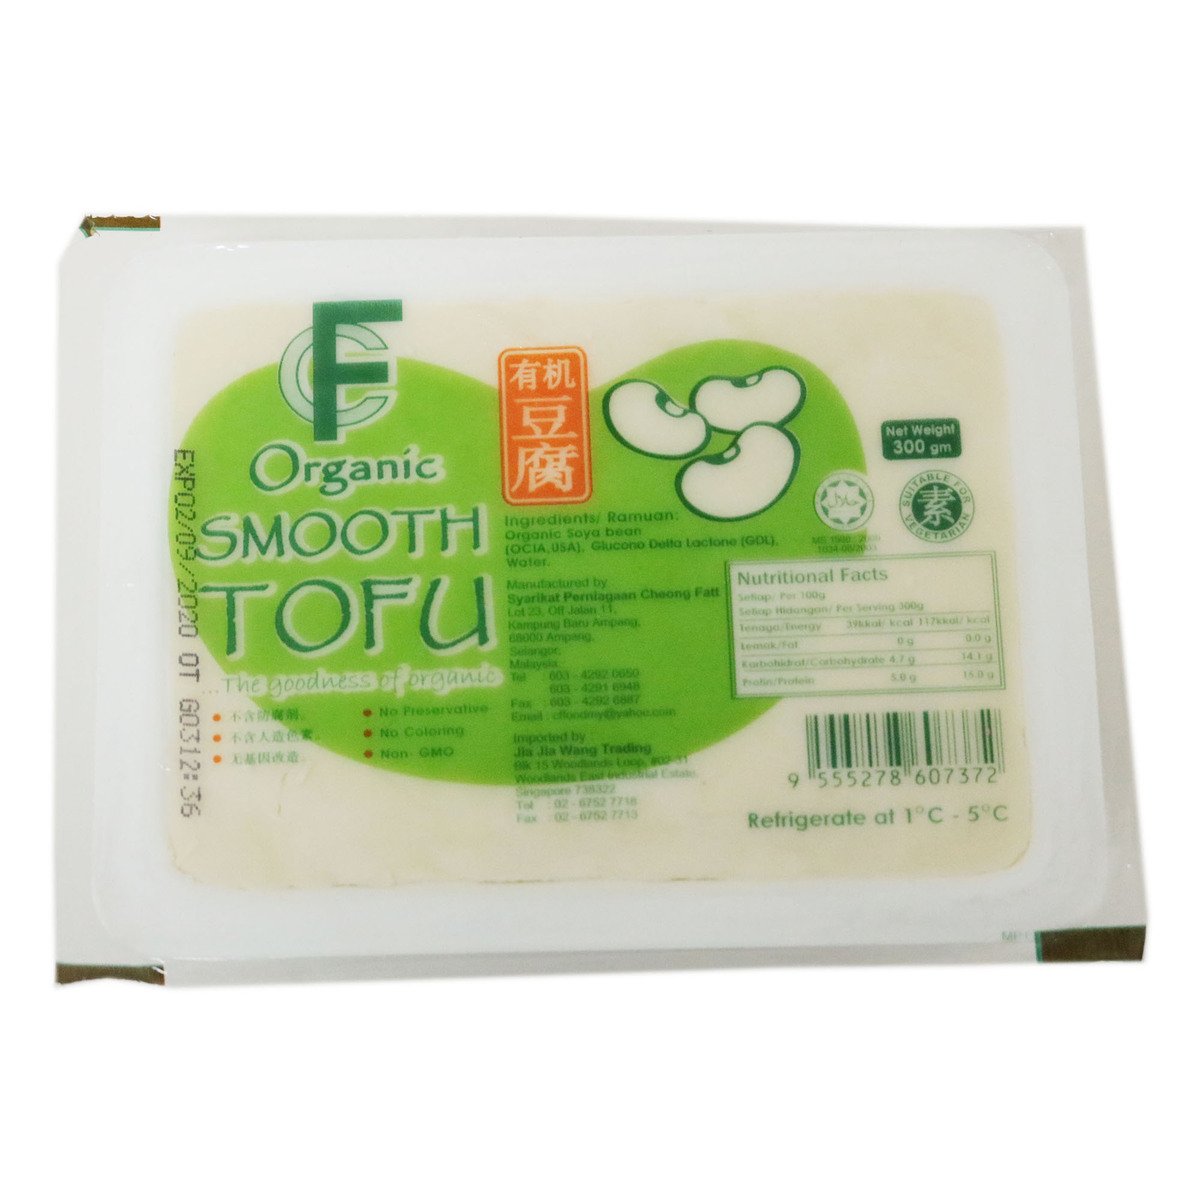 Cheong Fatt Organic Tofu 300g